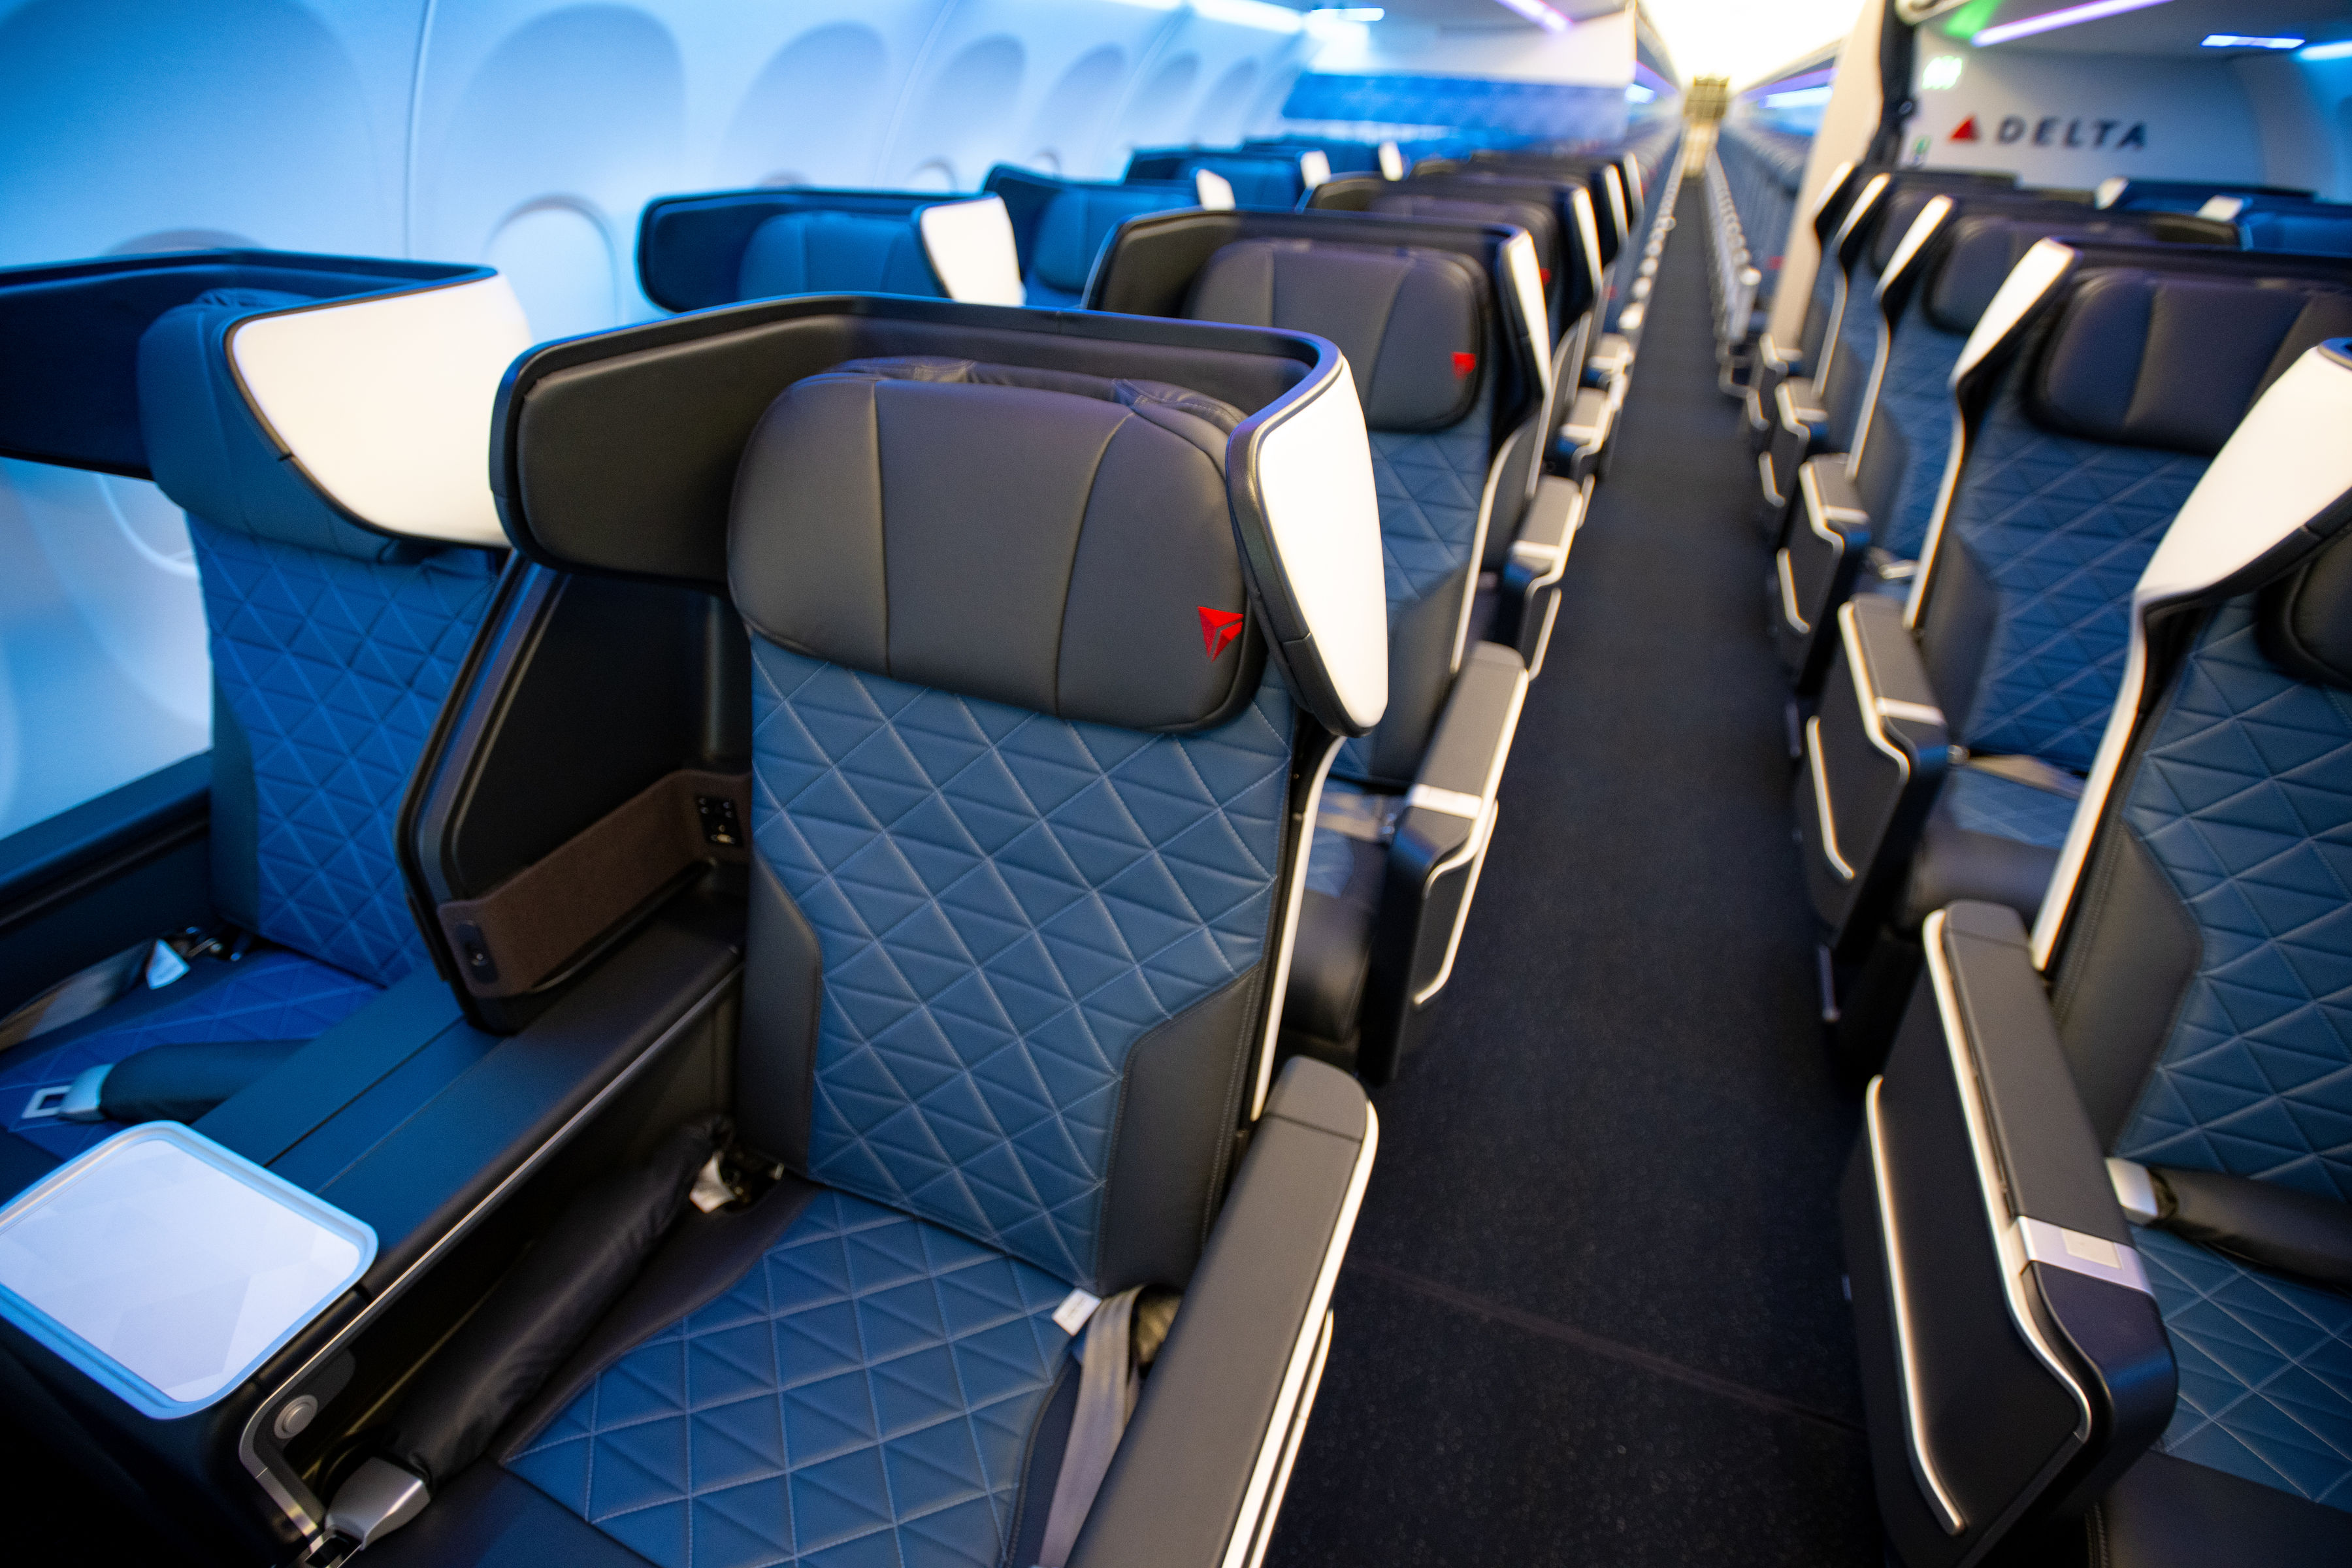 Delta A321neo Domestic First Class cabin